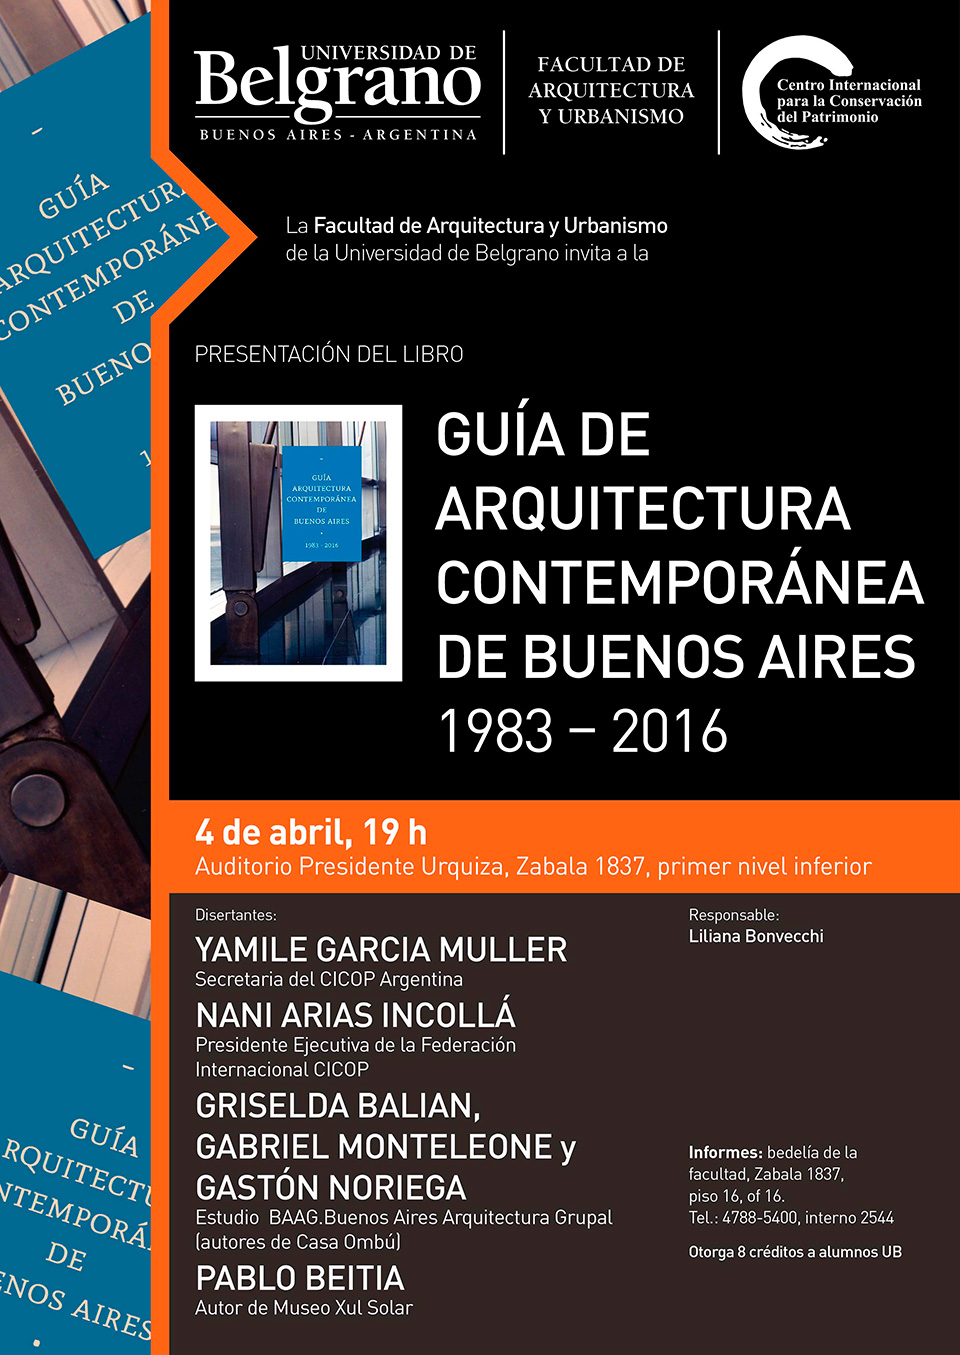 Presentación de libro “Guía de Arquitectura Contemporánea de Buenos Aires”.